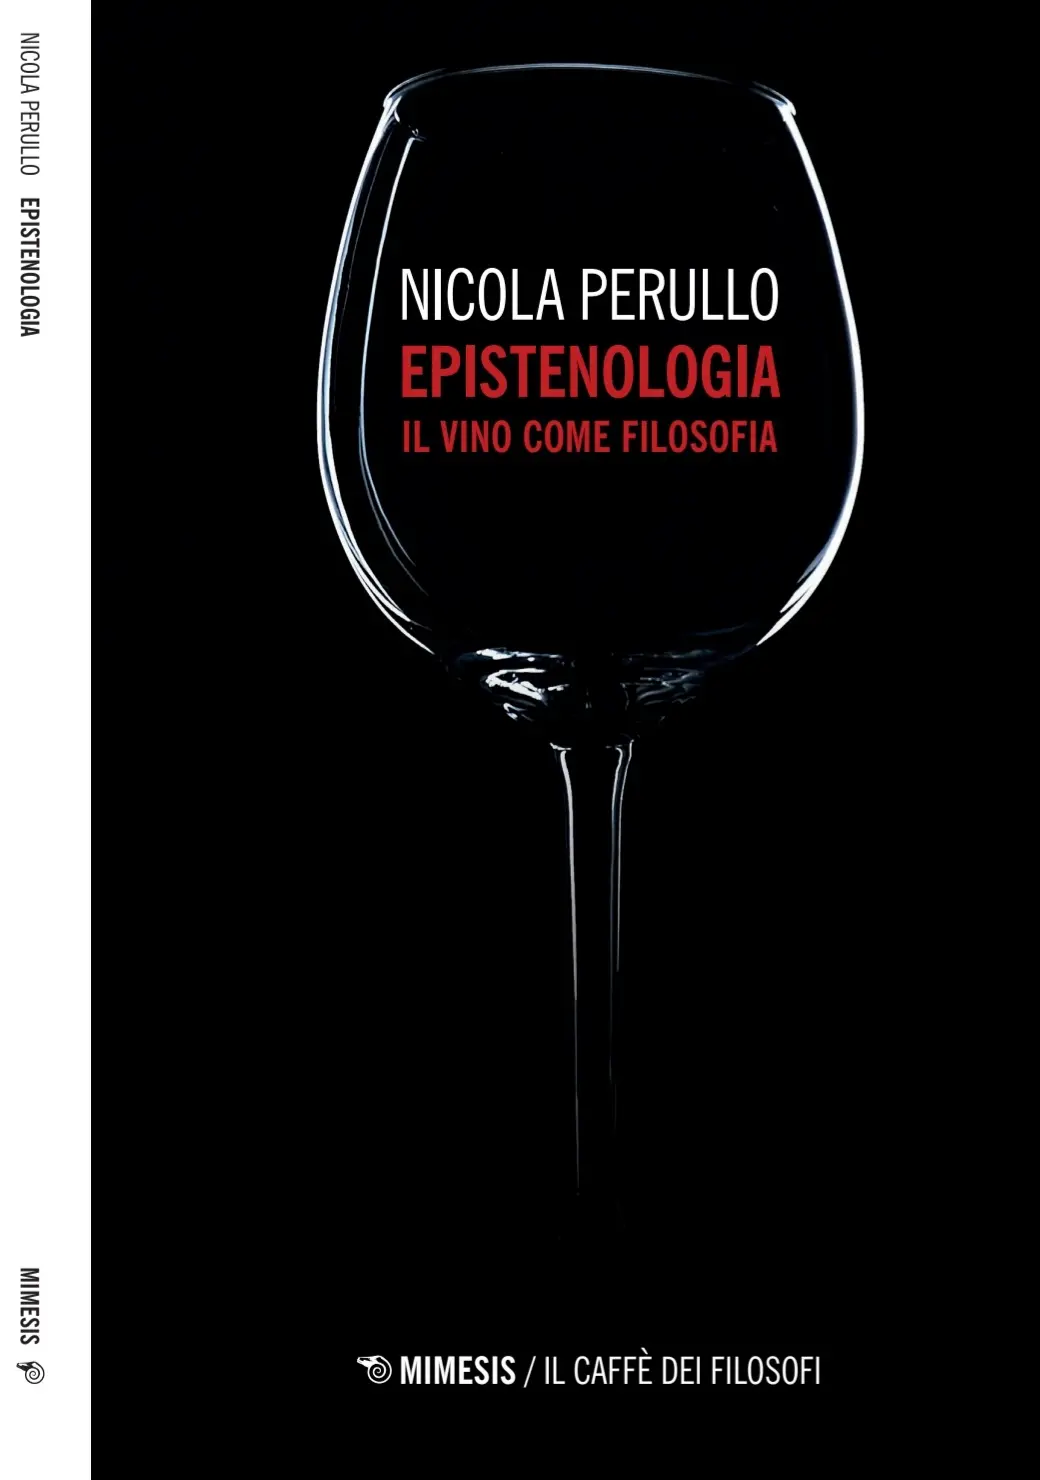 Epistenologia, il vino come filosofia, Nicola Perullo, ed Mimesis 2021